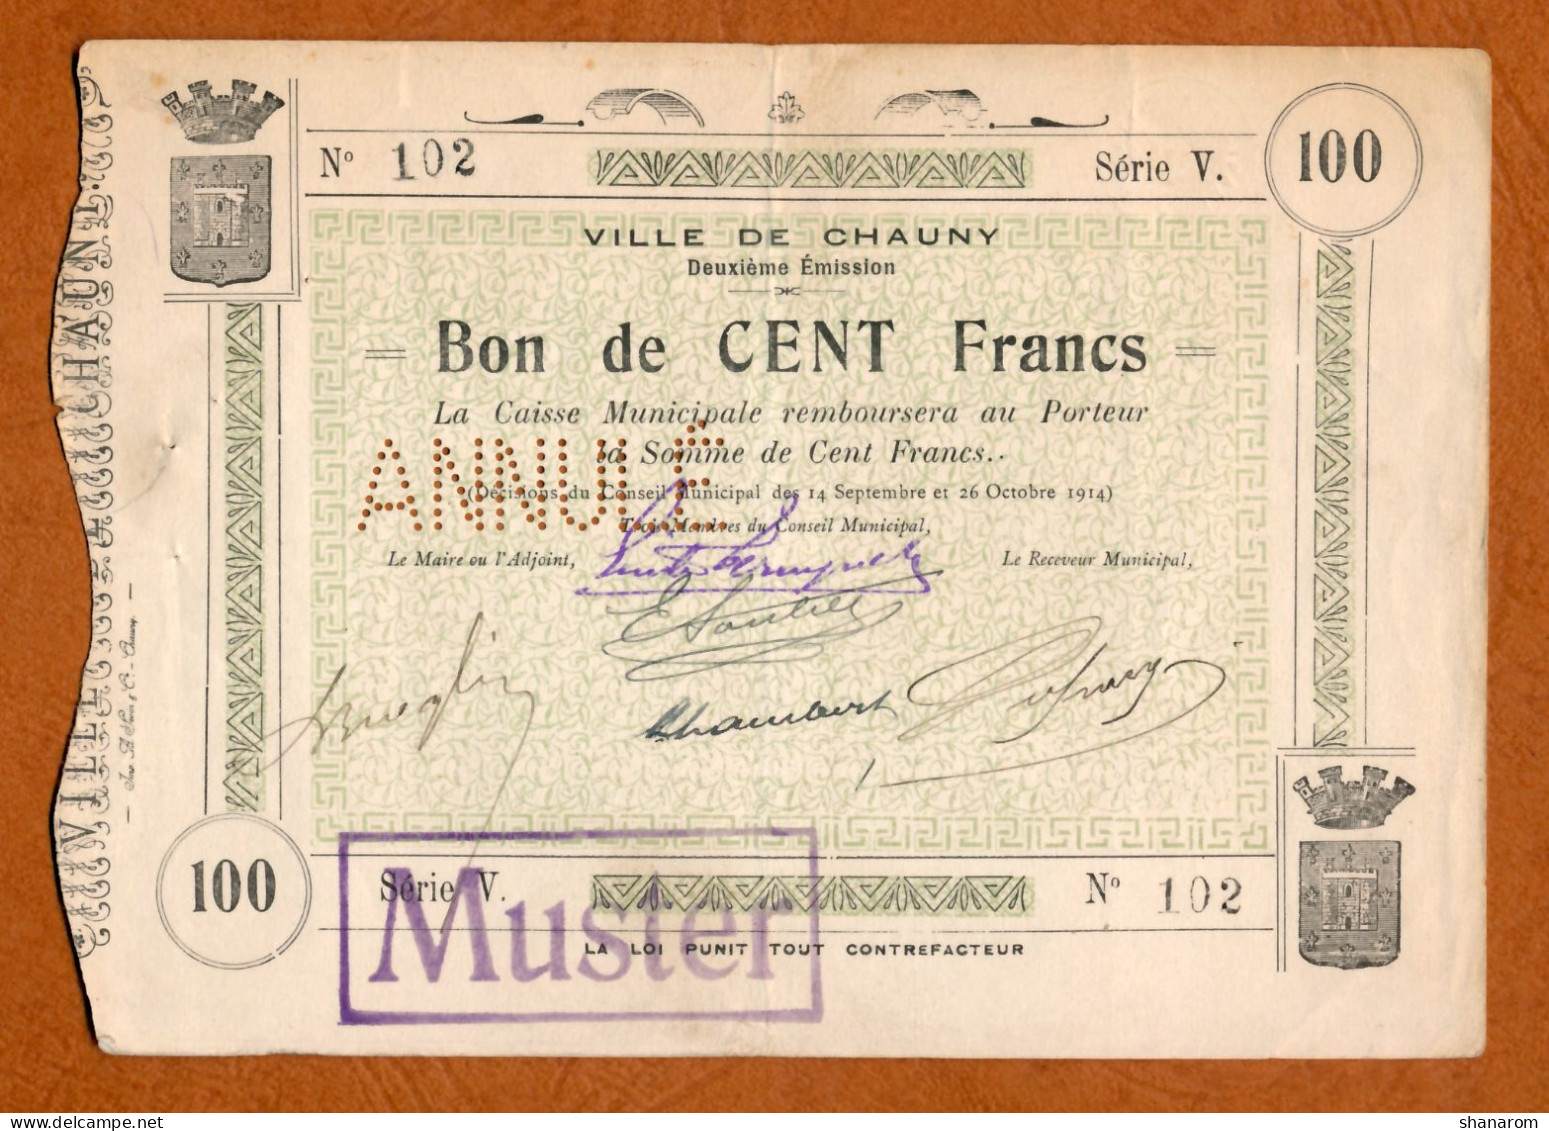 1914-18 // Ville De CHAUNY (02) // Septembre & Octobre 1914 // Caisse Municipale // Bon De 100 Francs // Annulé-Muster - Buoni & Necessità